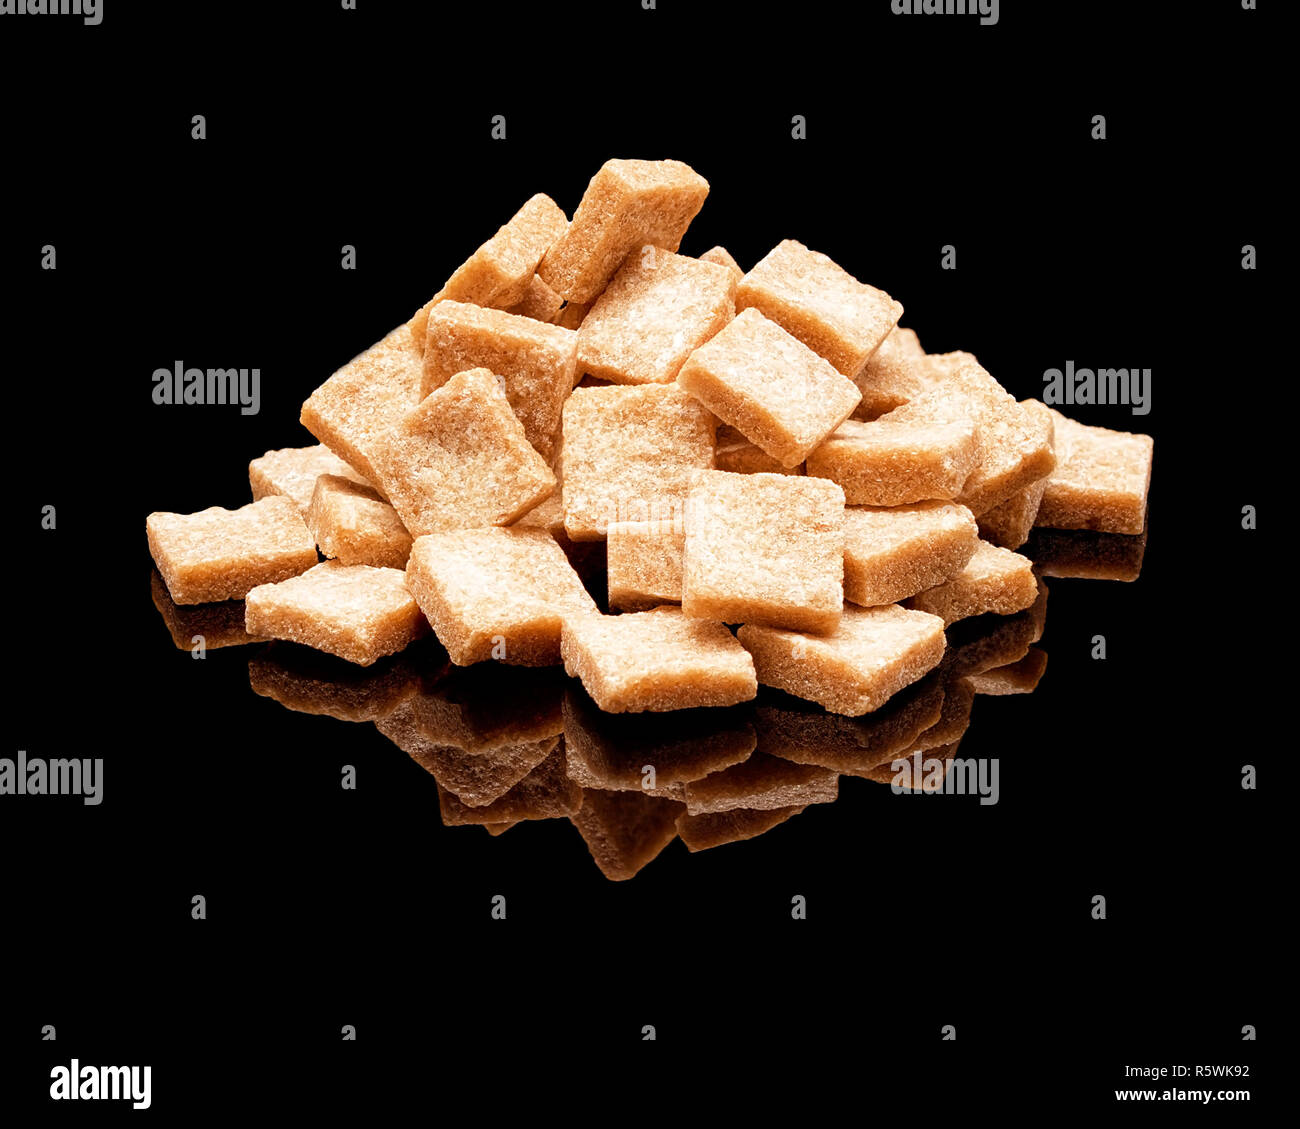 Pile of lump brown sugar Stock Photo